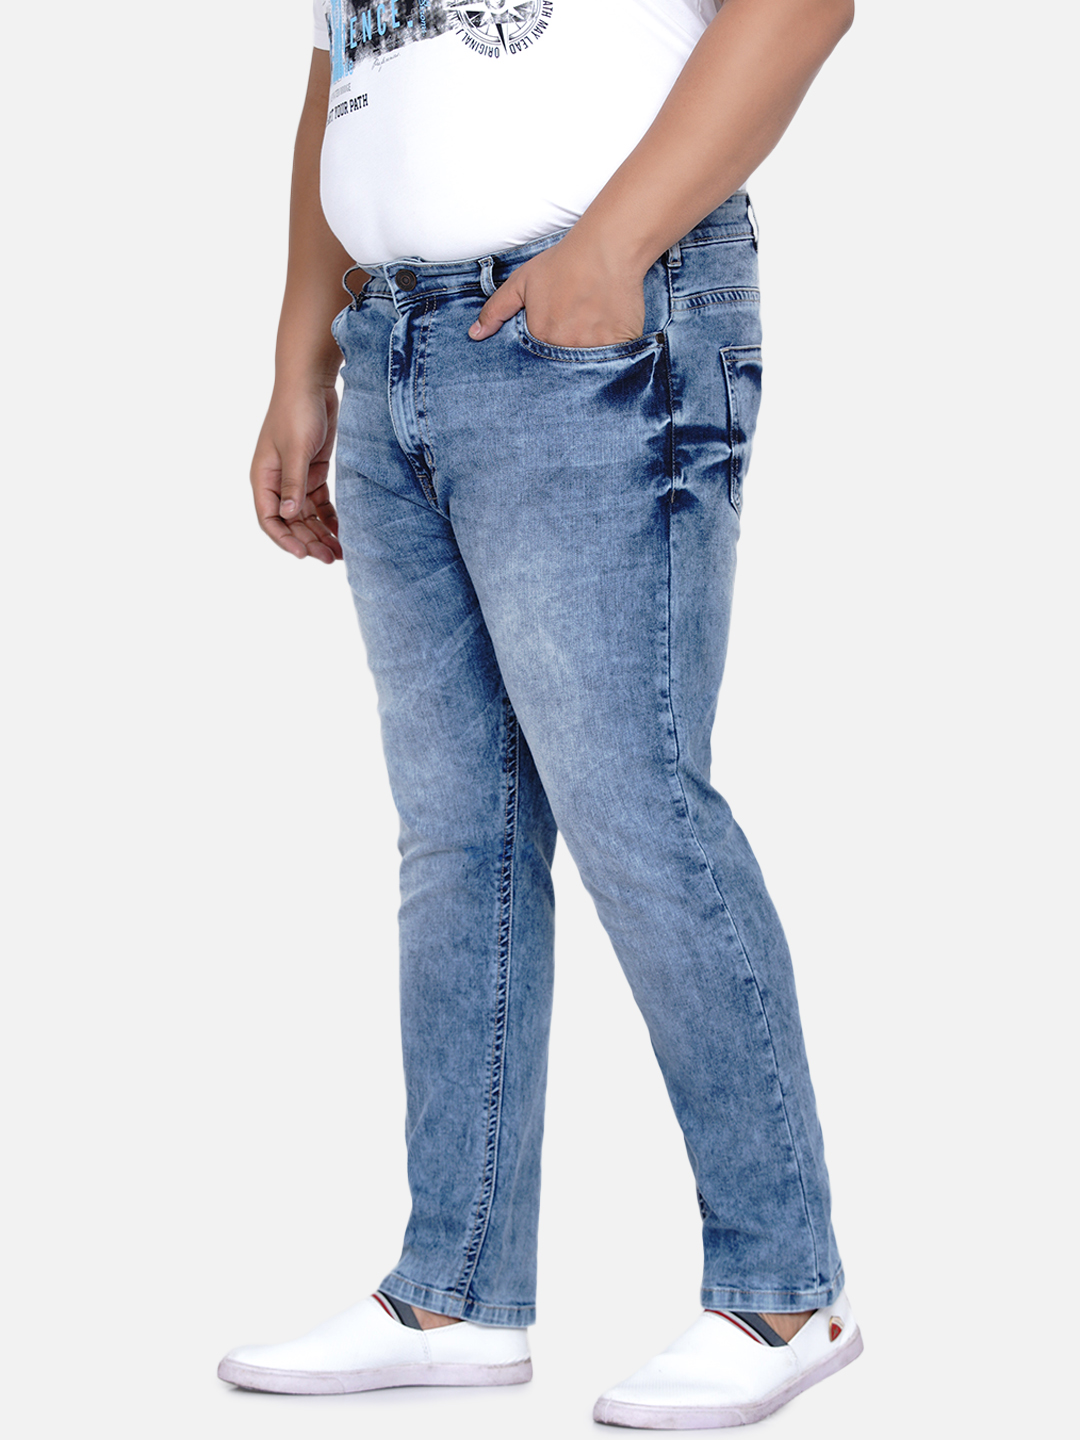 bottomwear/jeans/JPJ12181/jpj12181-4.jpg